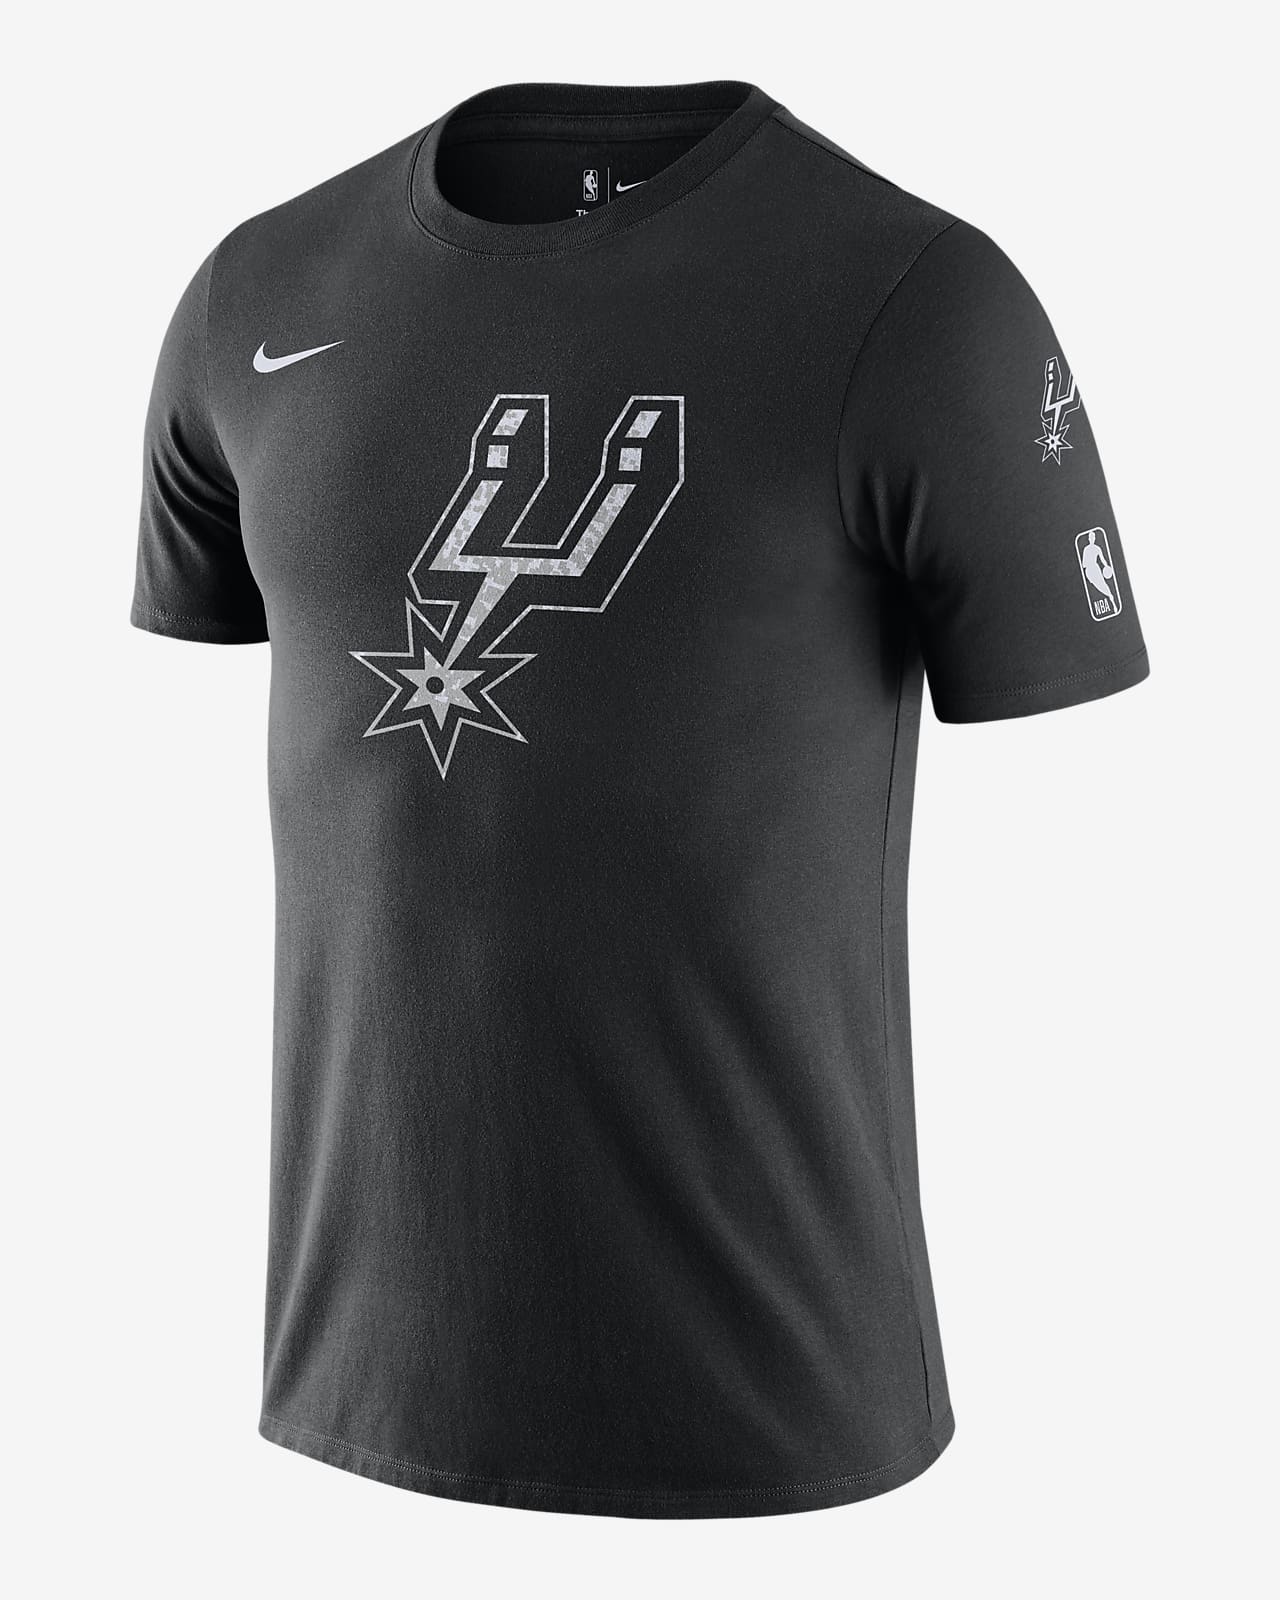 Playera Nike de la NBA para hombre San Antonio Spurs Essential